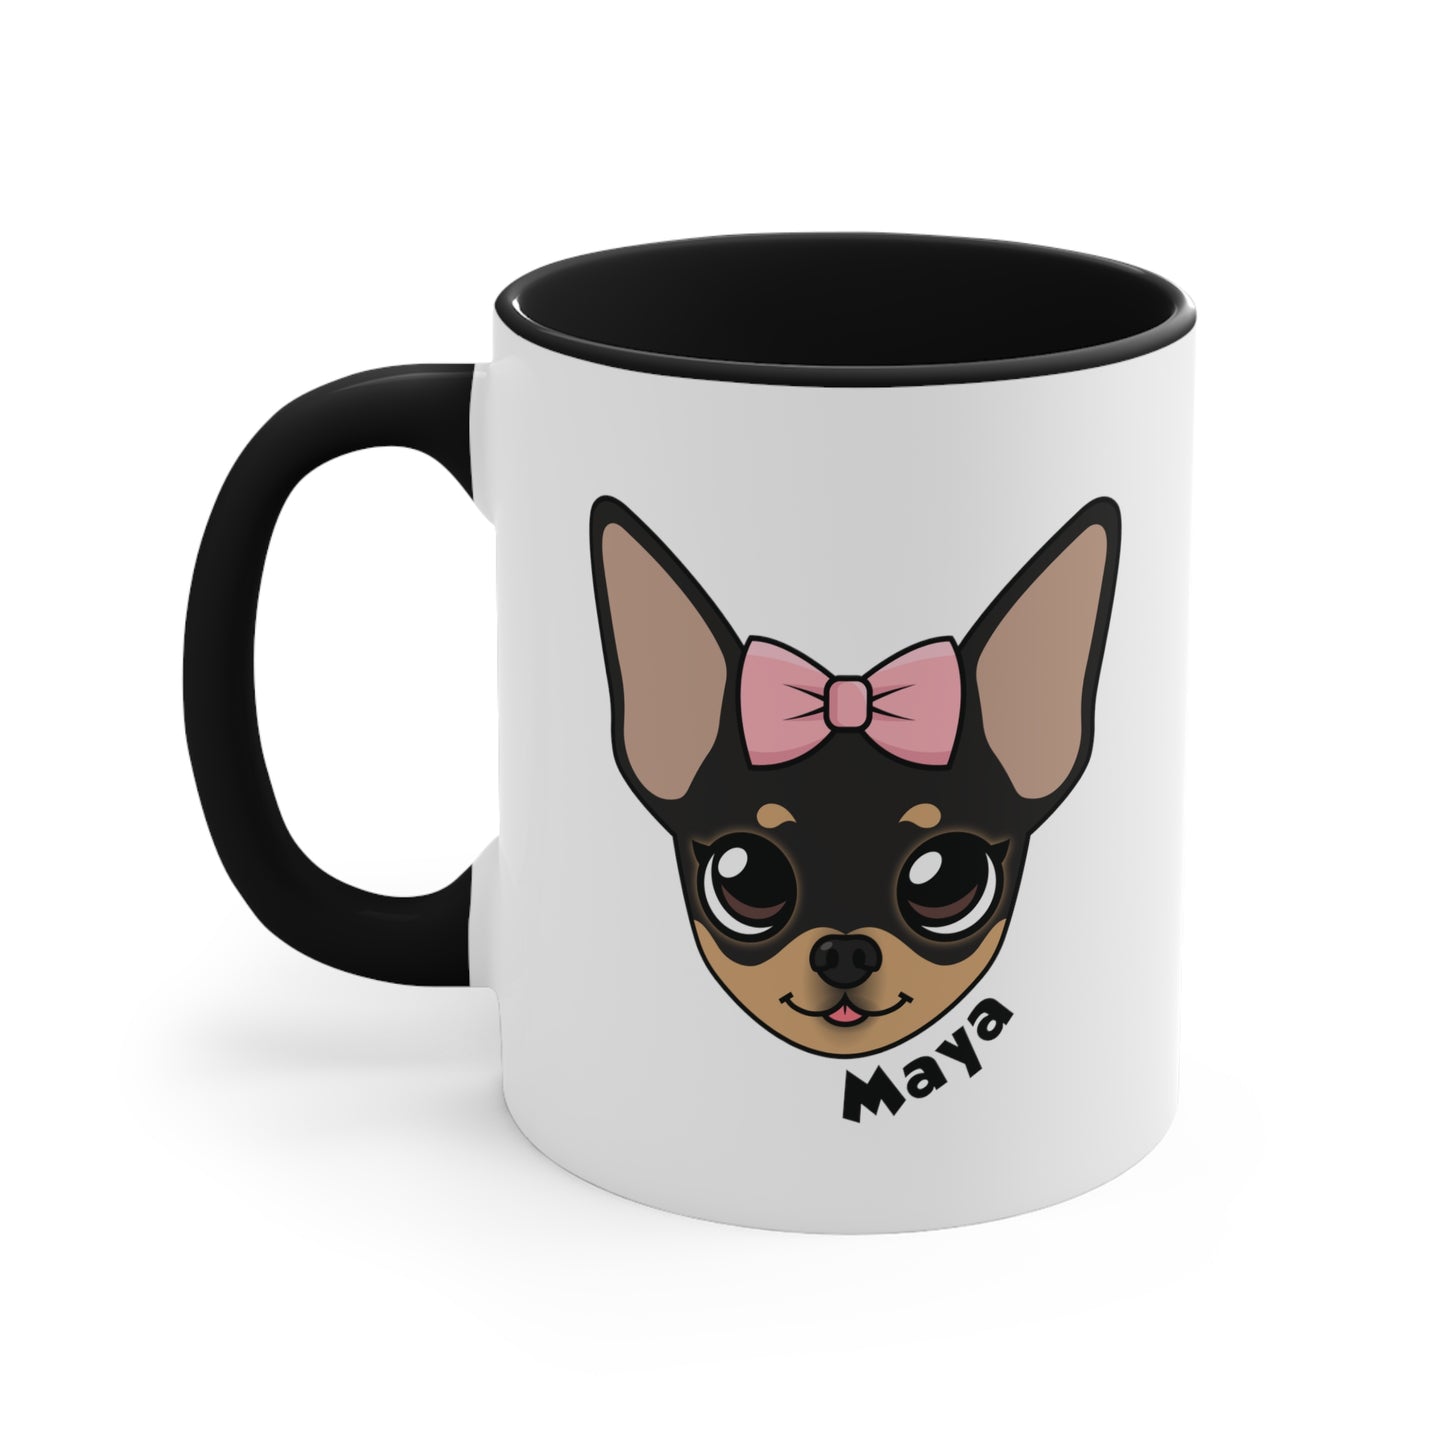 Tiny Chihuahua Maya's Morning Mug